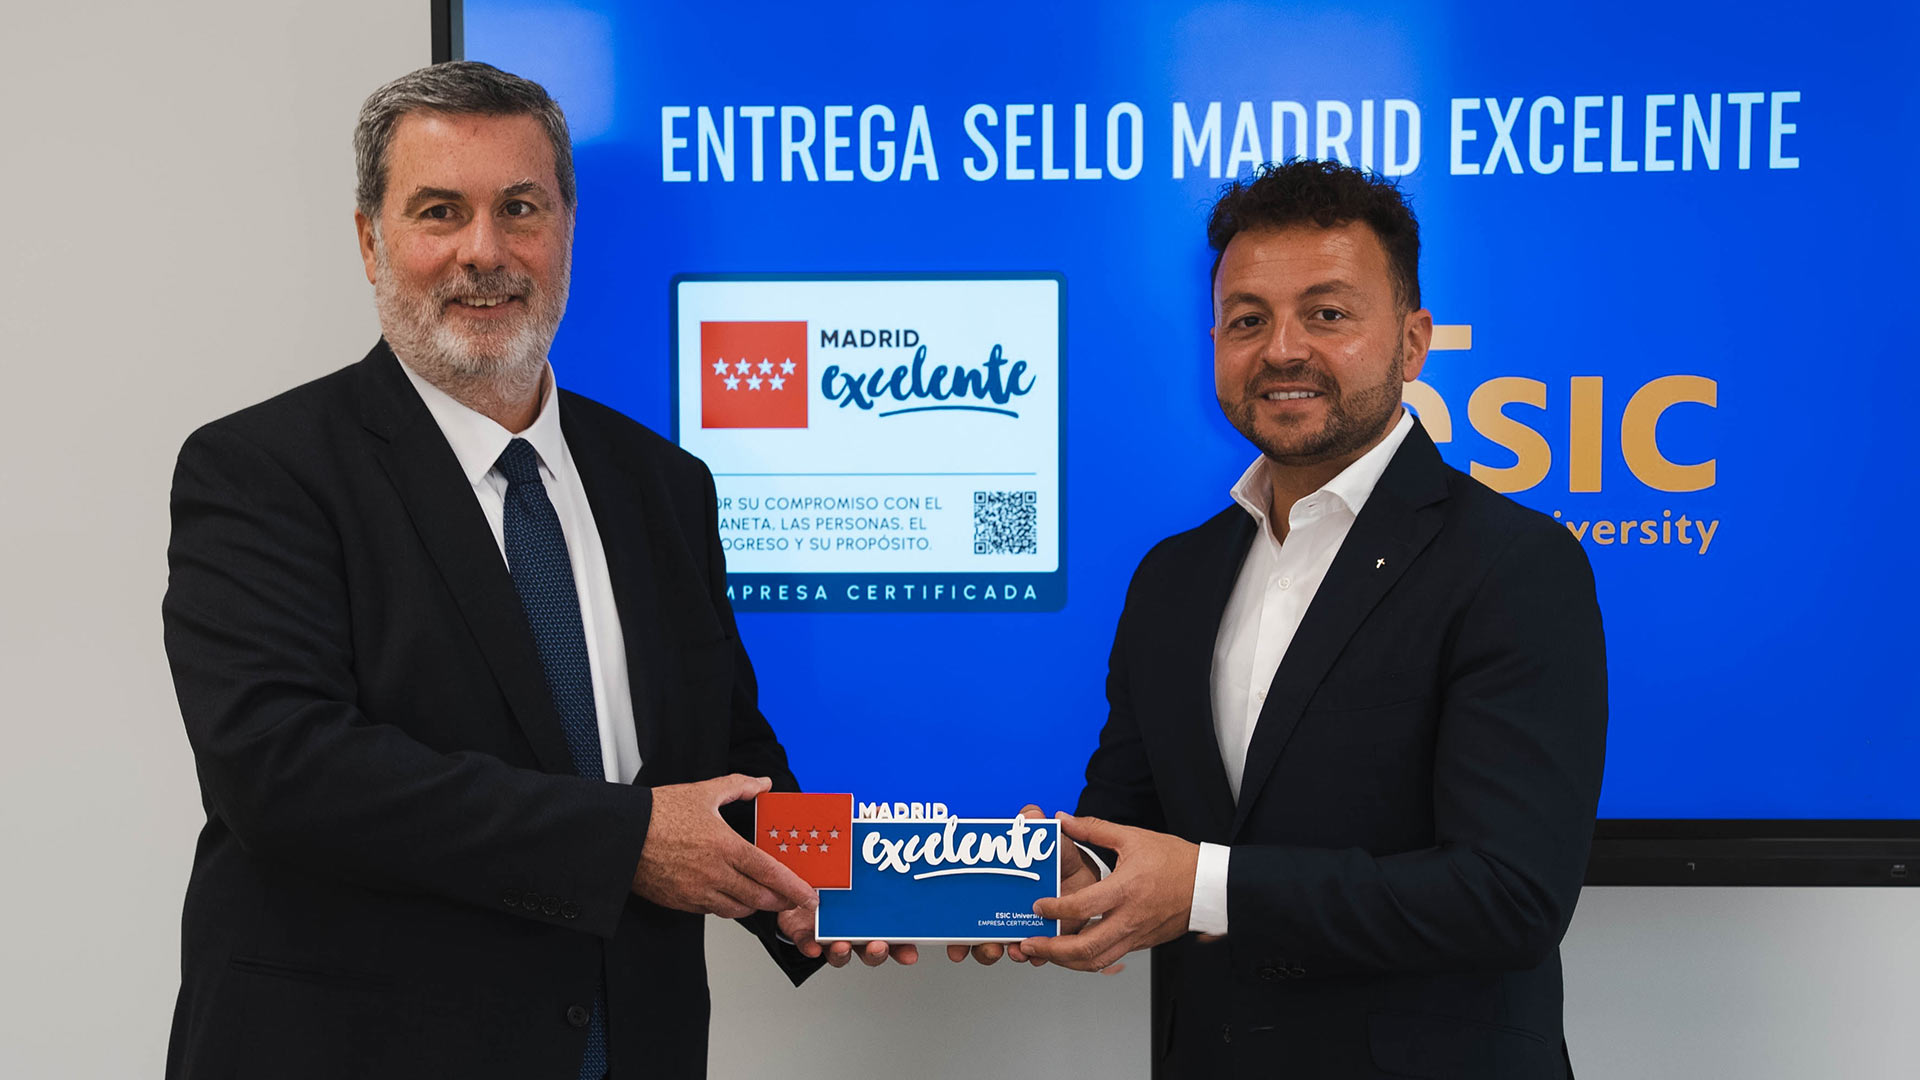 Madrid Excelente hace entrega de su sello de calidad a ESIC University